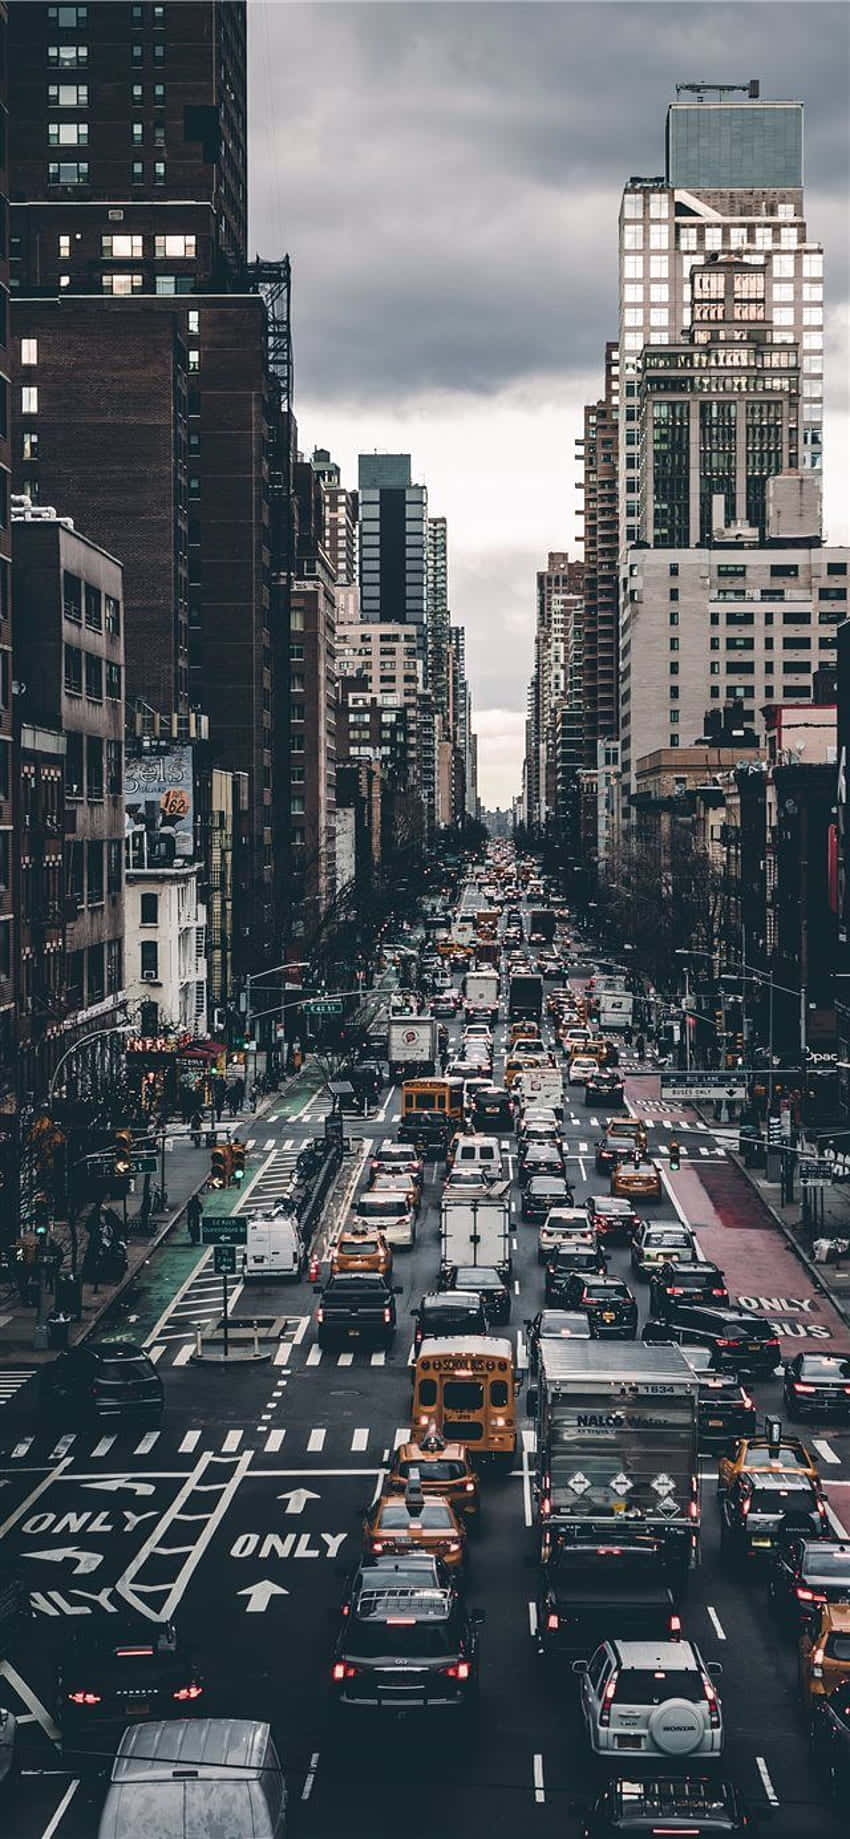 Lebhafteshintergrundbild Für Android Mit Einer Belebten Straße In New York City